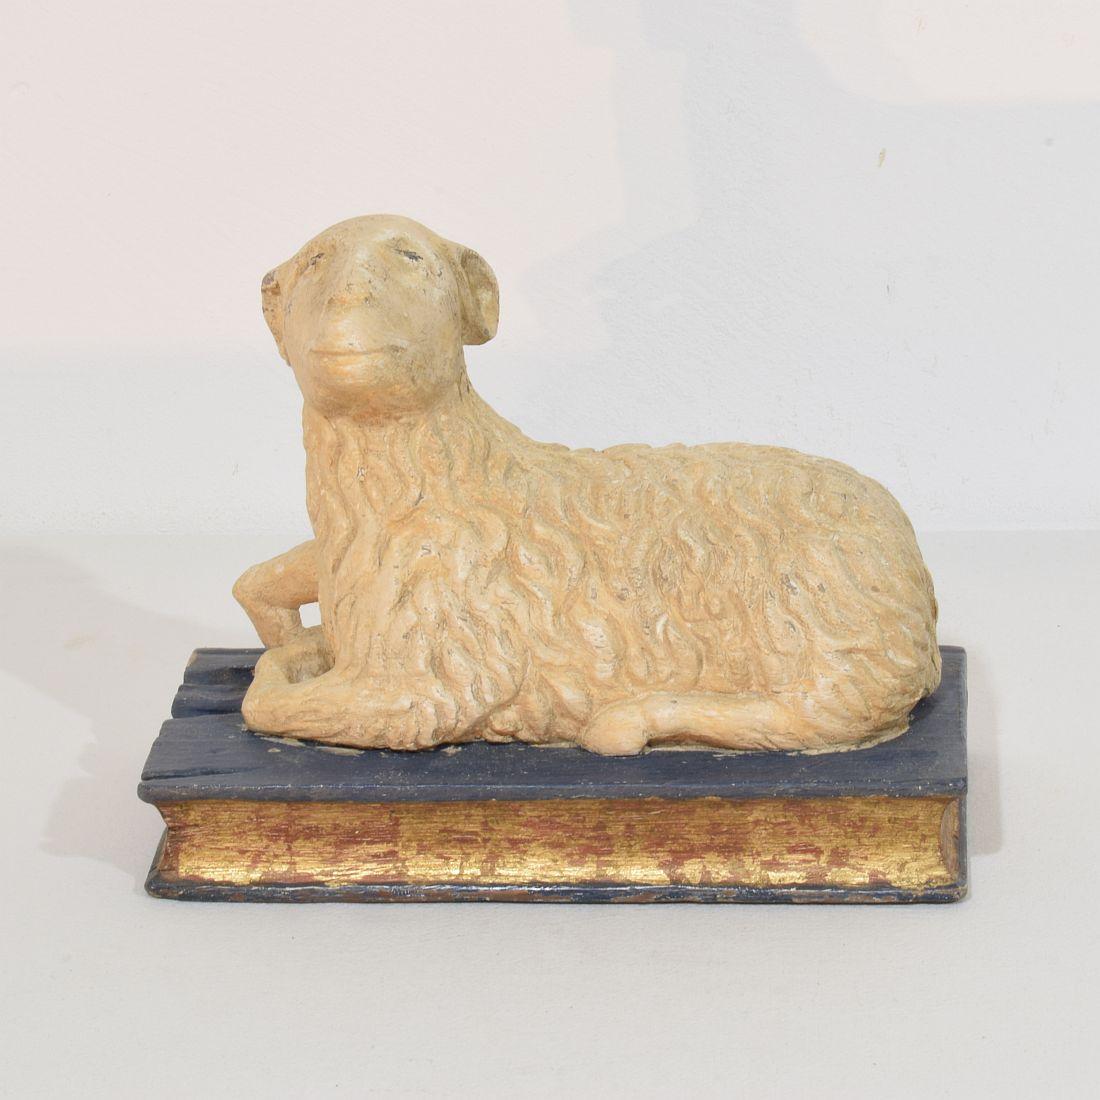 Magnifique agneau de Dieu sculpté à la main ( Agnus Dei)
France, vers 1650-1750.
Très rare et très belle pièce d'époque. A mon avis, la couleur et la dorure ont été restaurées.
Usures, petites pertes et réparations anciennes